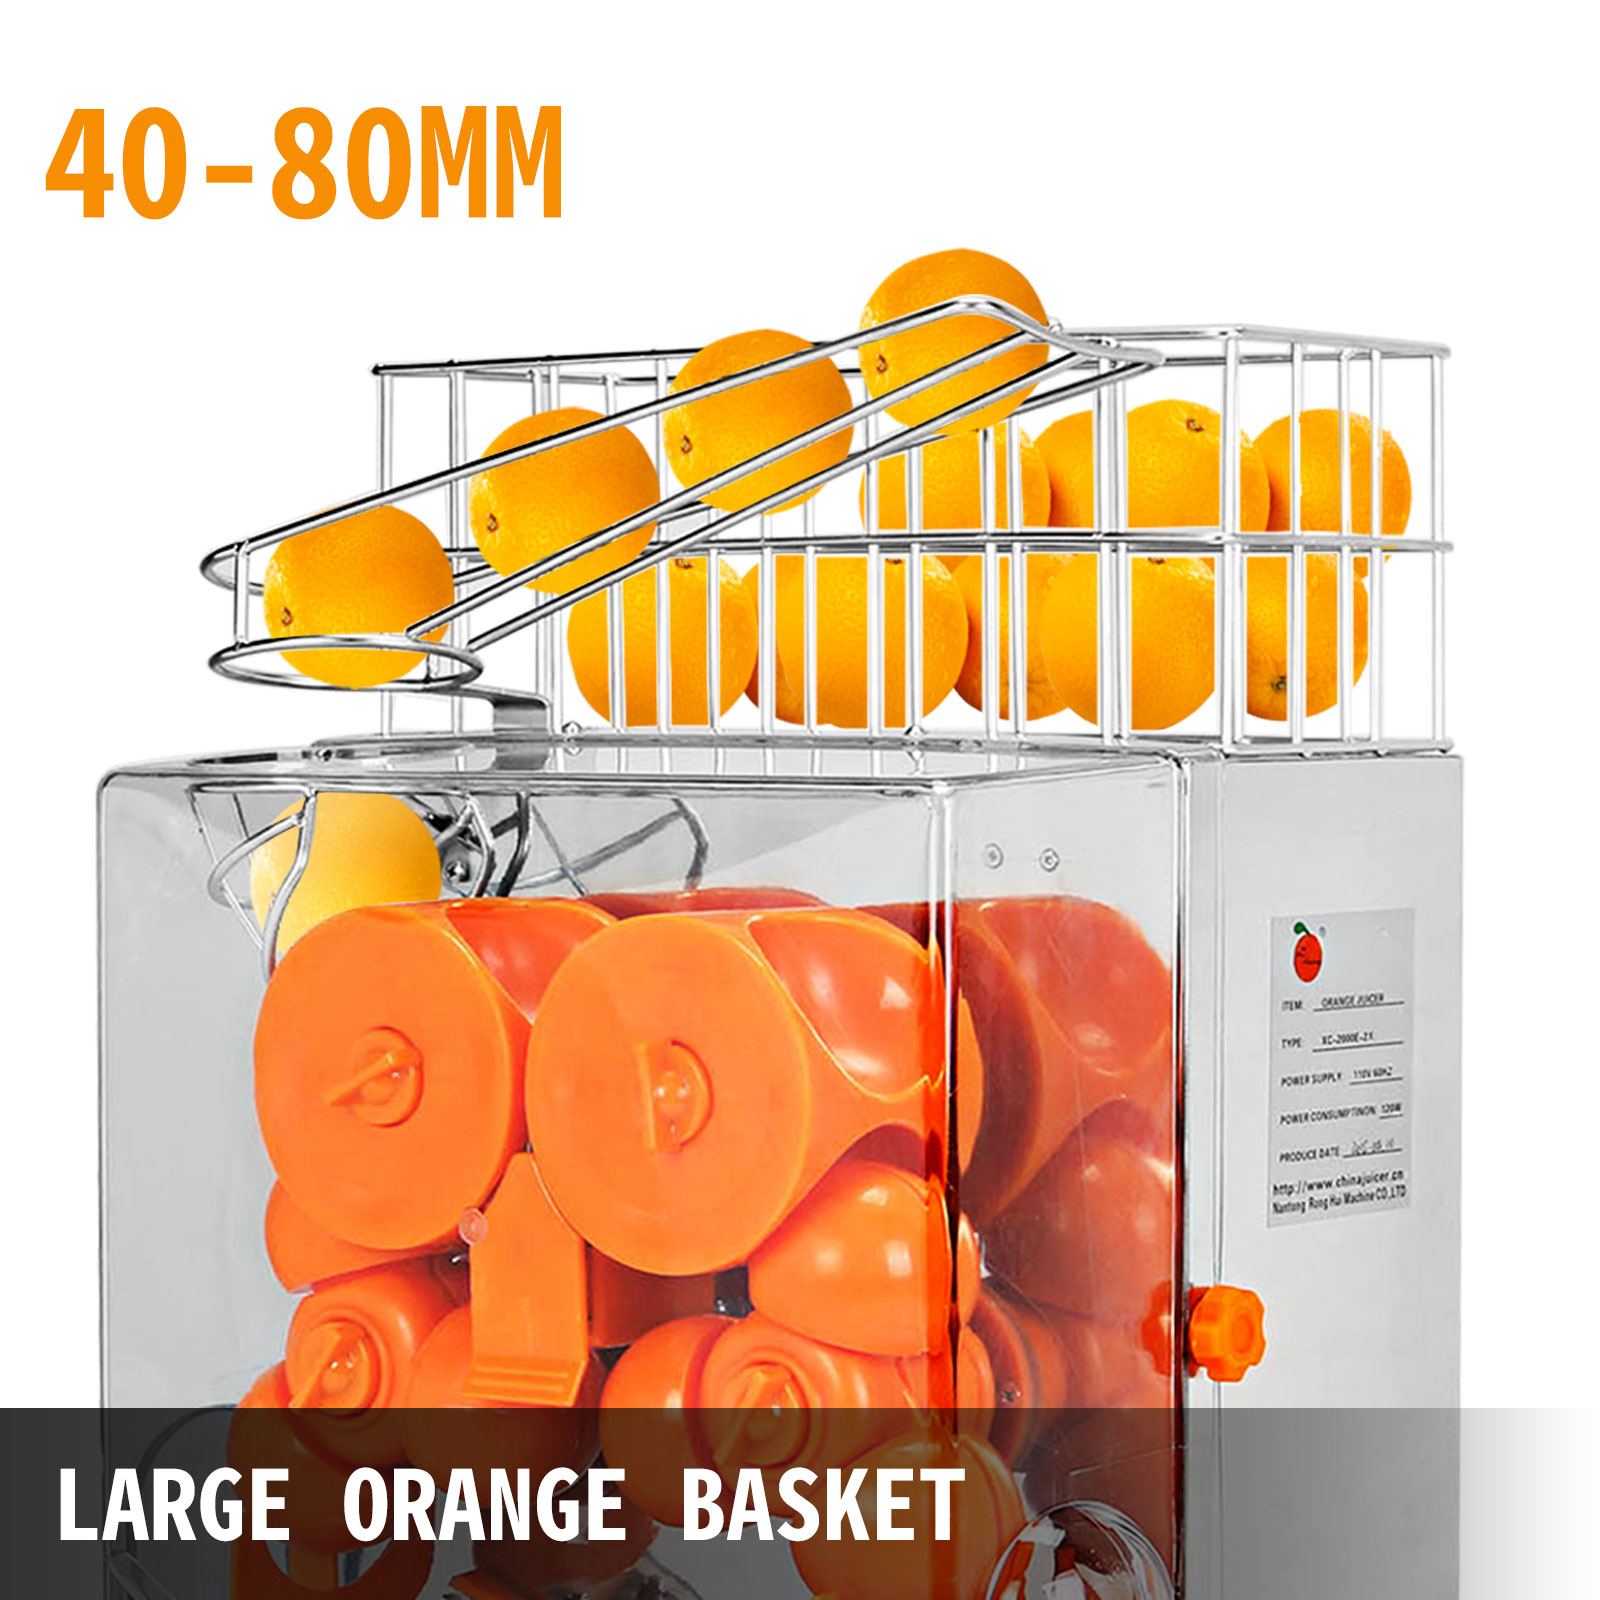 Presse-agrumes orange commercial, extracteur de jus à mastication lente,  presse-agrumes électrique à épluchage automatique pour orange, jus